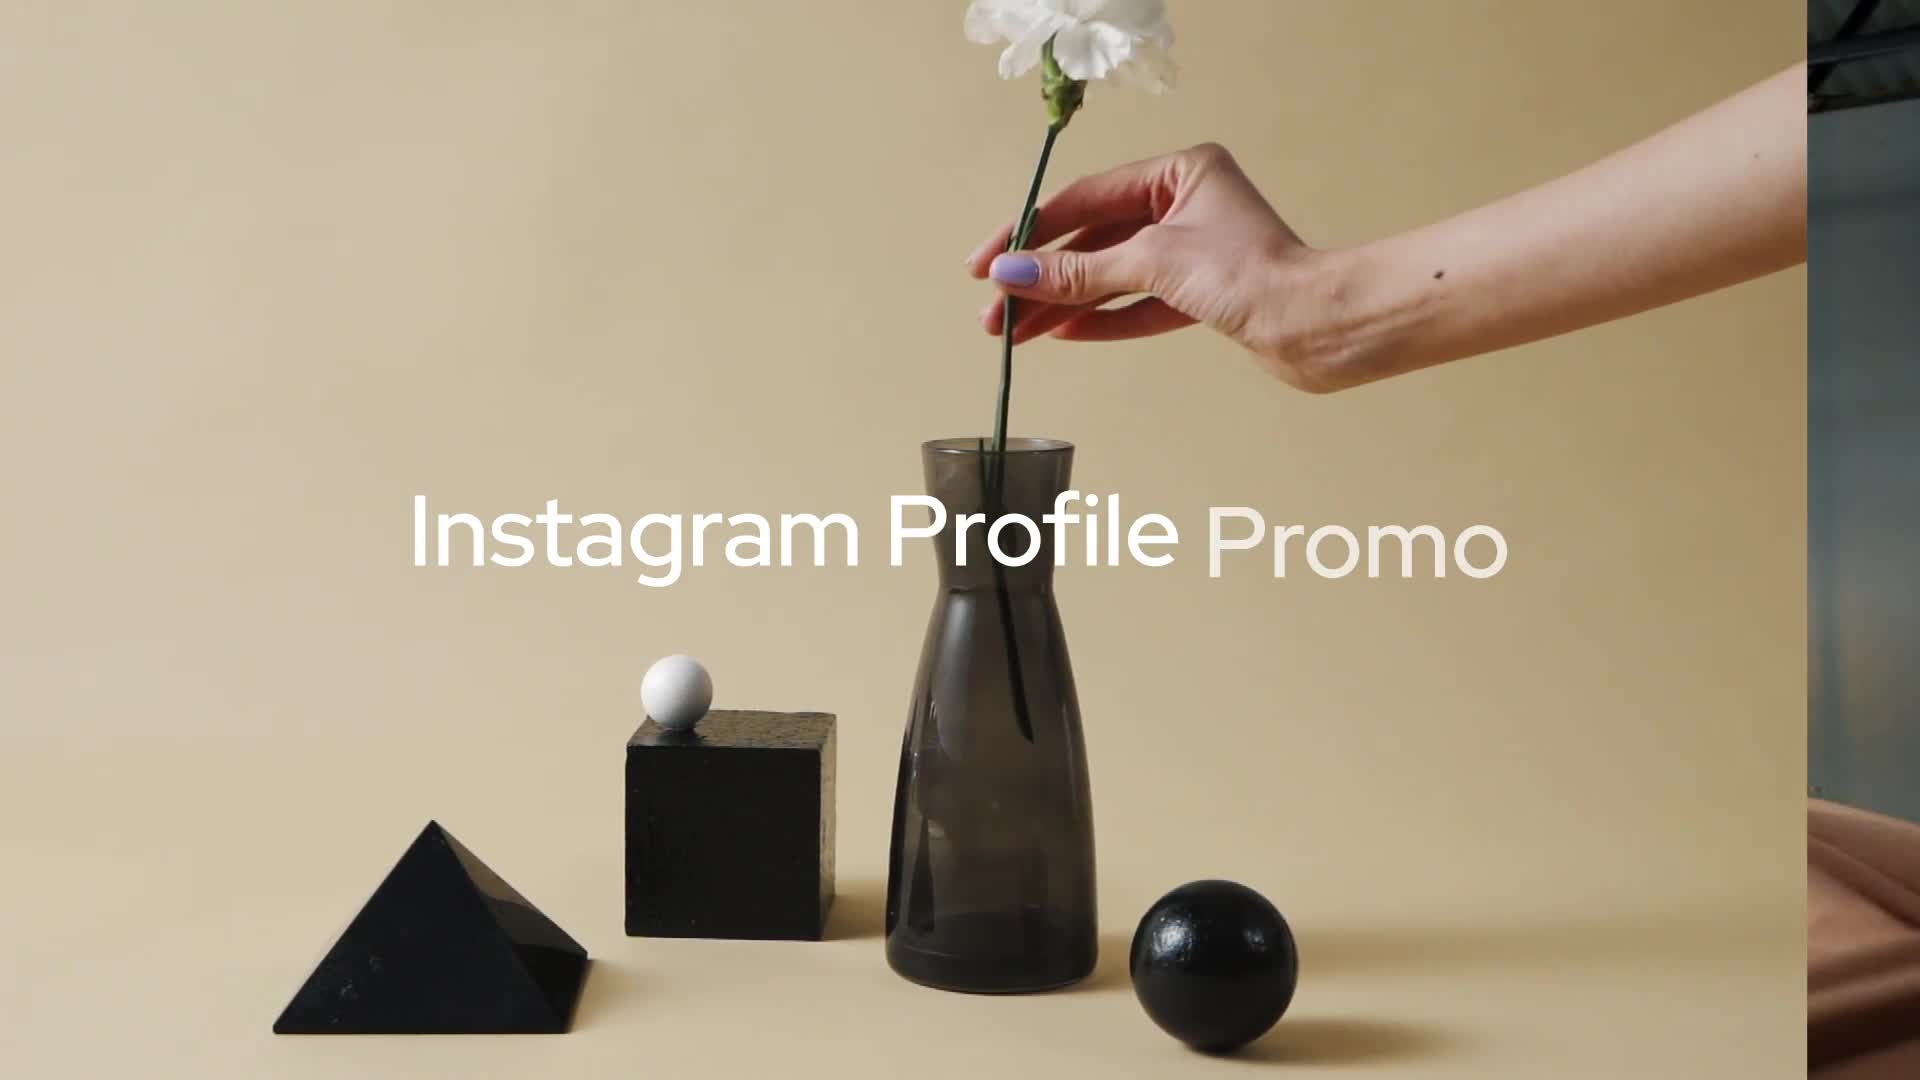 Instagram Profile Promo for Premiere Pro Videohive 34084946 Premiere Pro Image 7